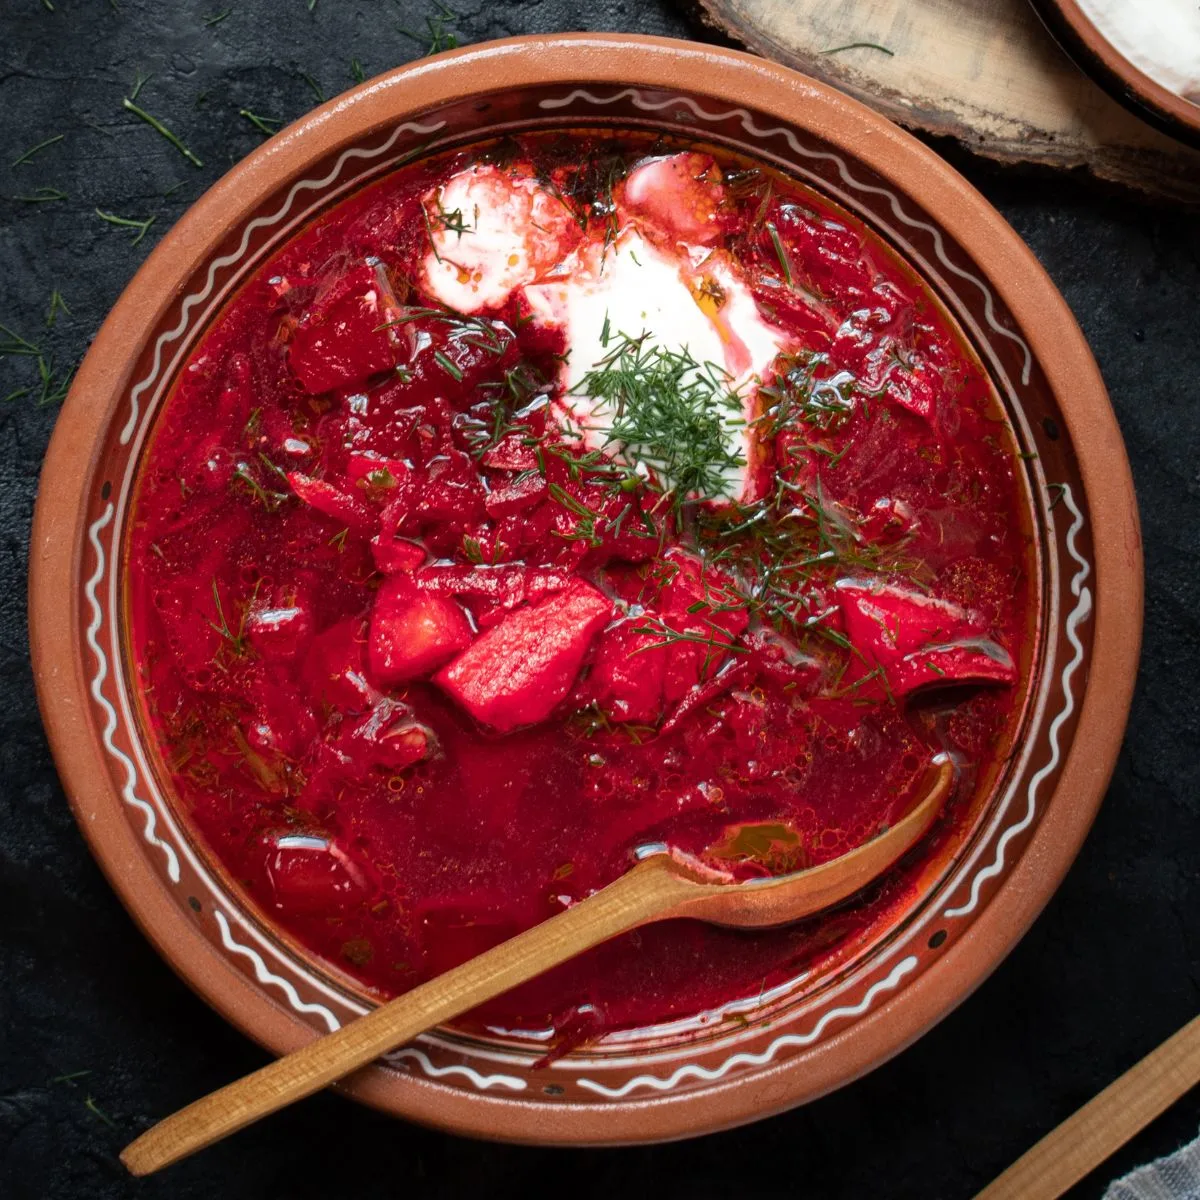 Beet borscht in a ceramic bowl